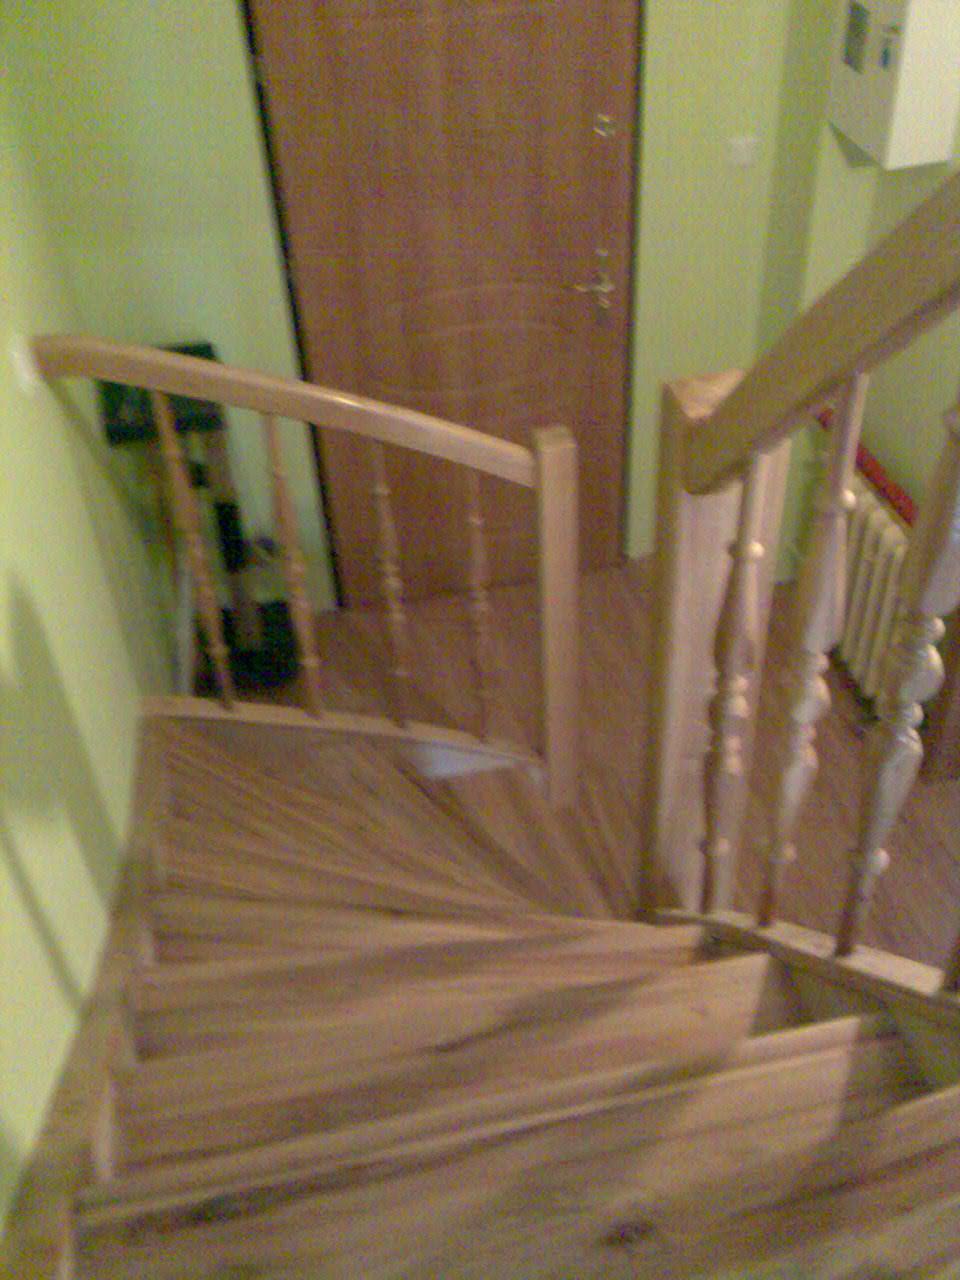 schody drewniane odrestaurowane. Drewno- wiąz